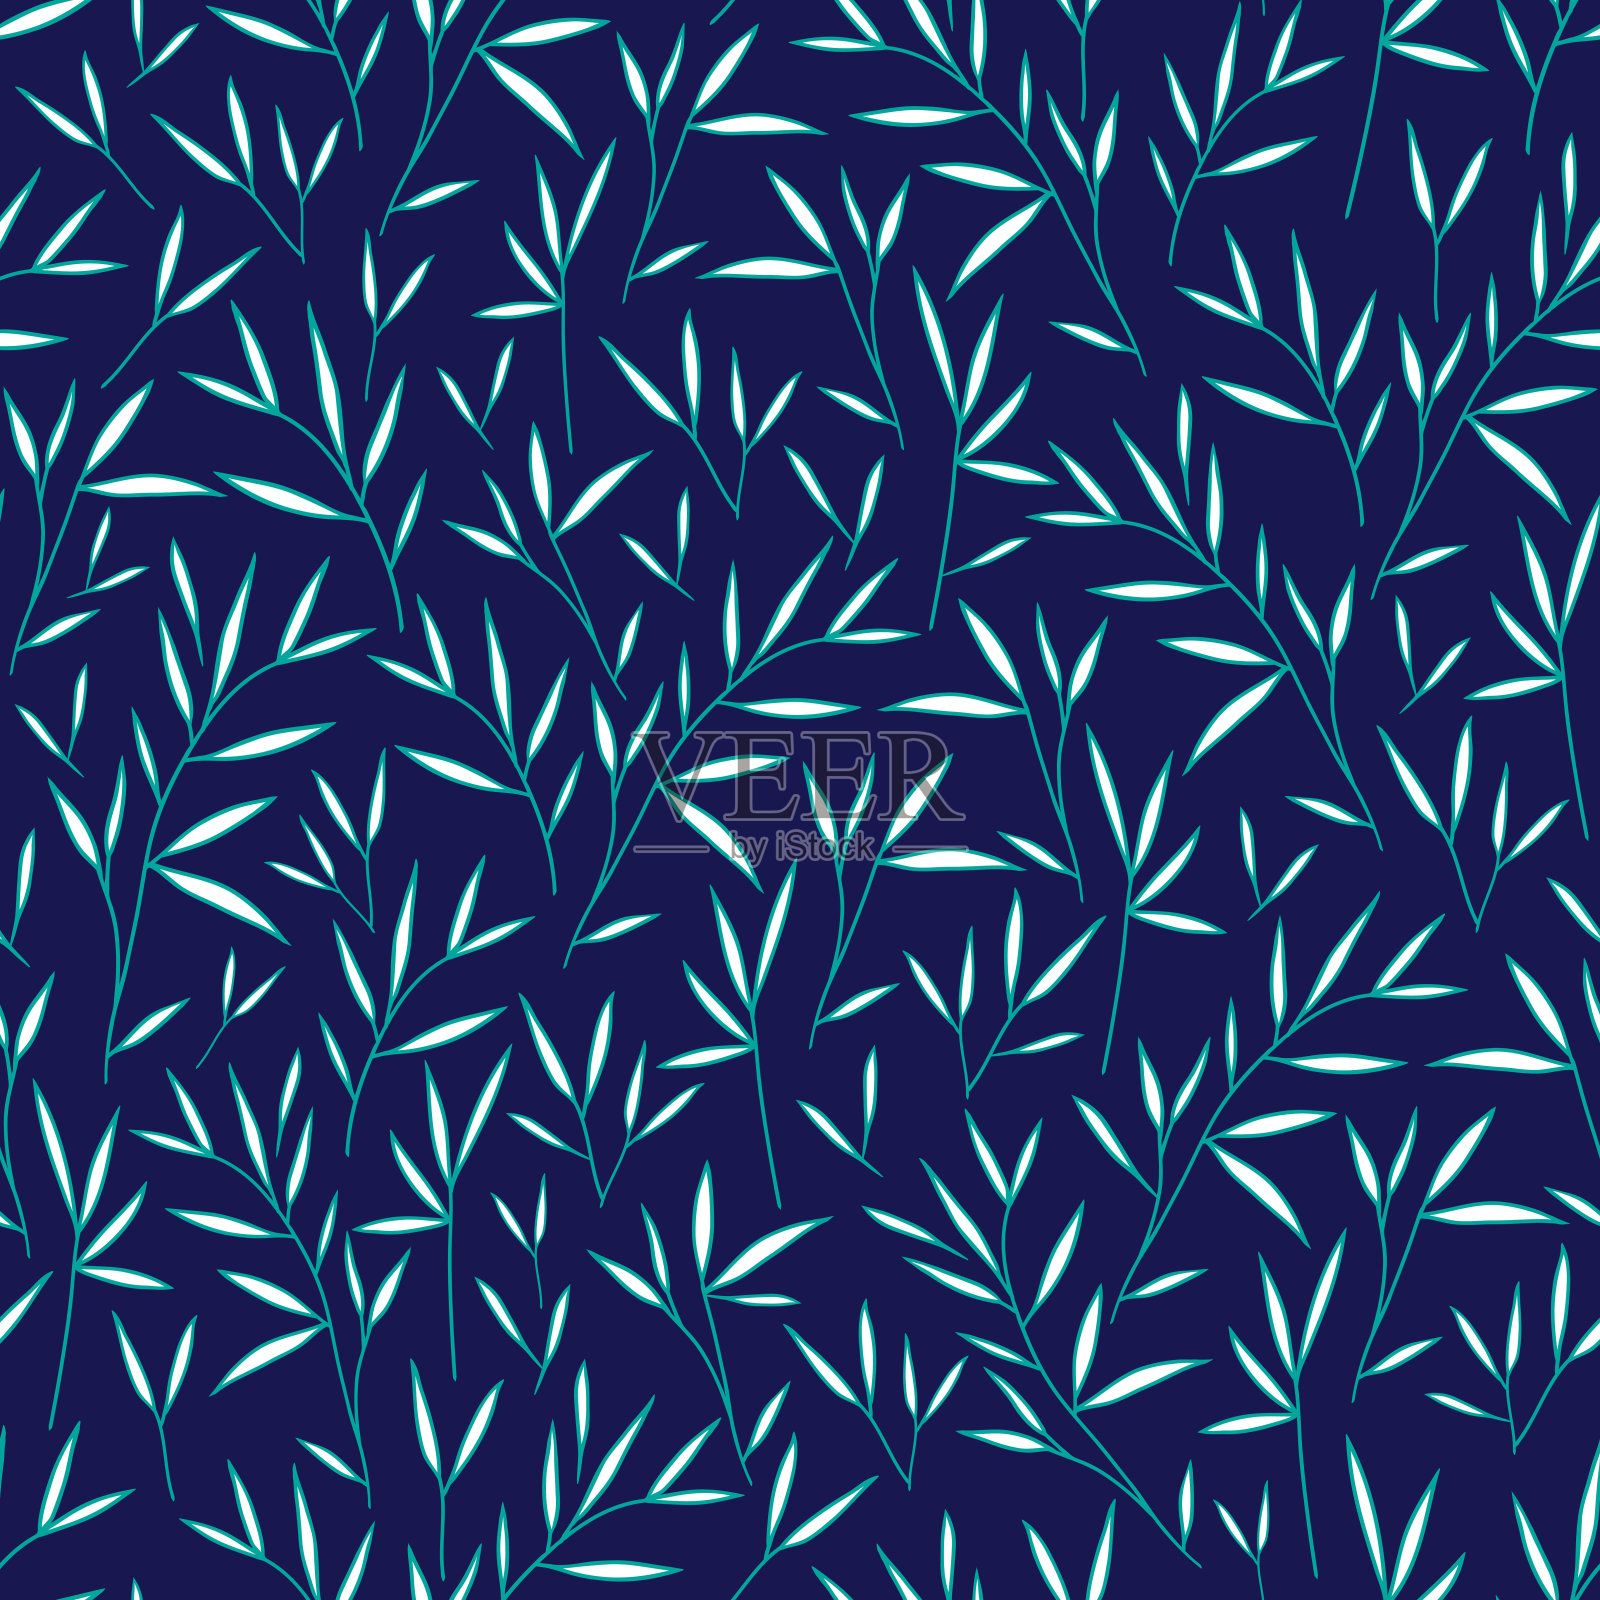 无缝的竹叶白绿相间的图案。向量。插图。蓝色背景。插画图片素材